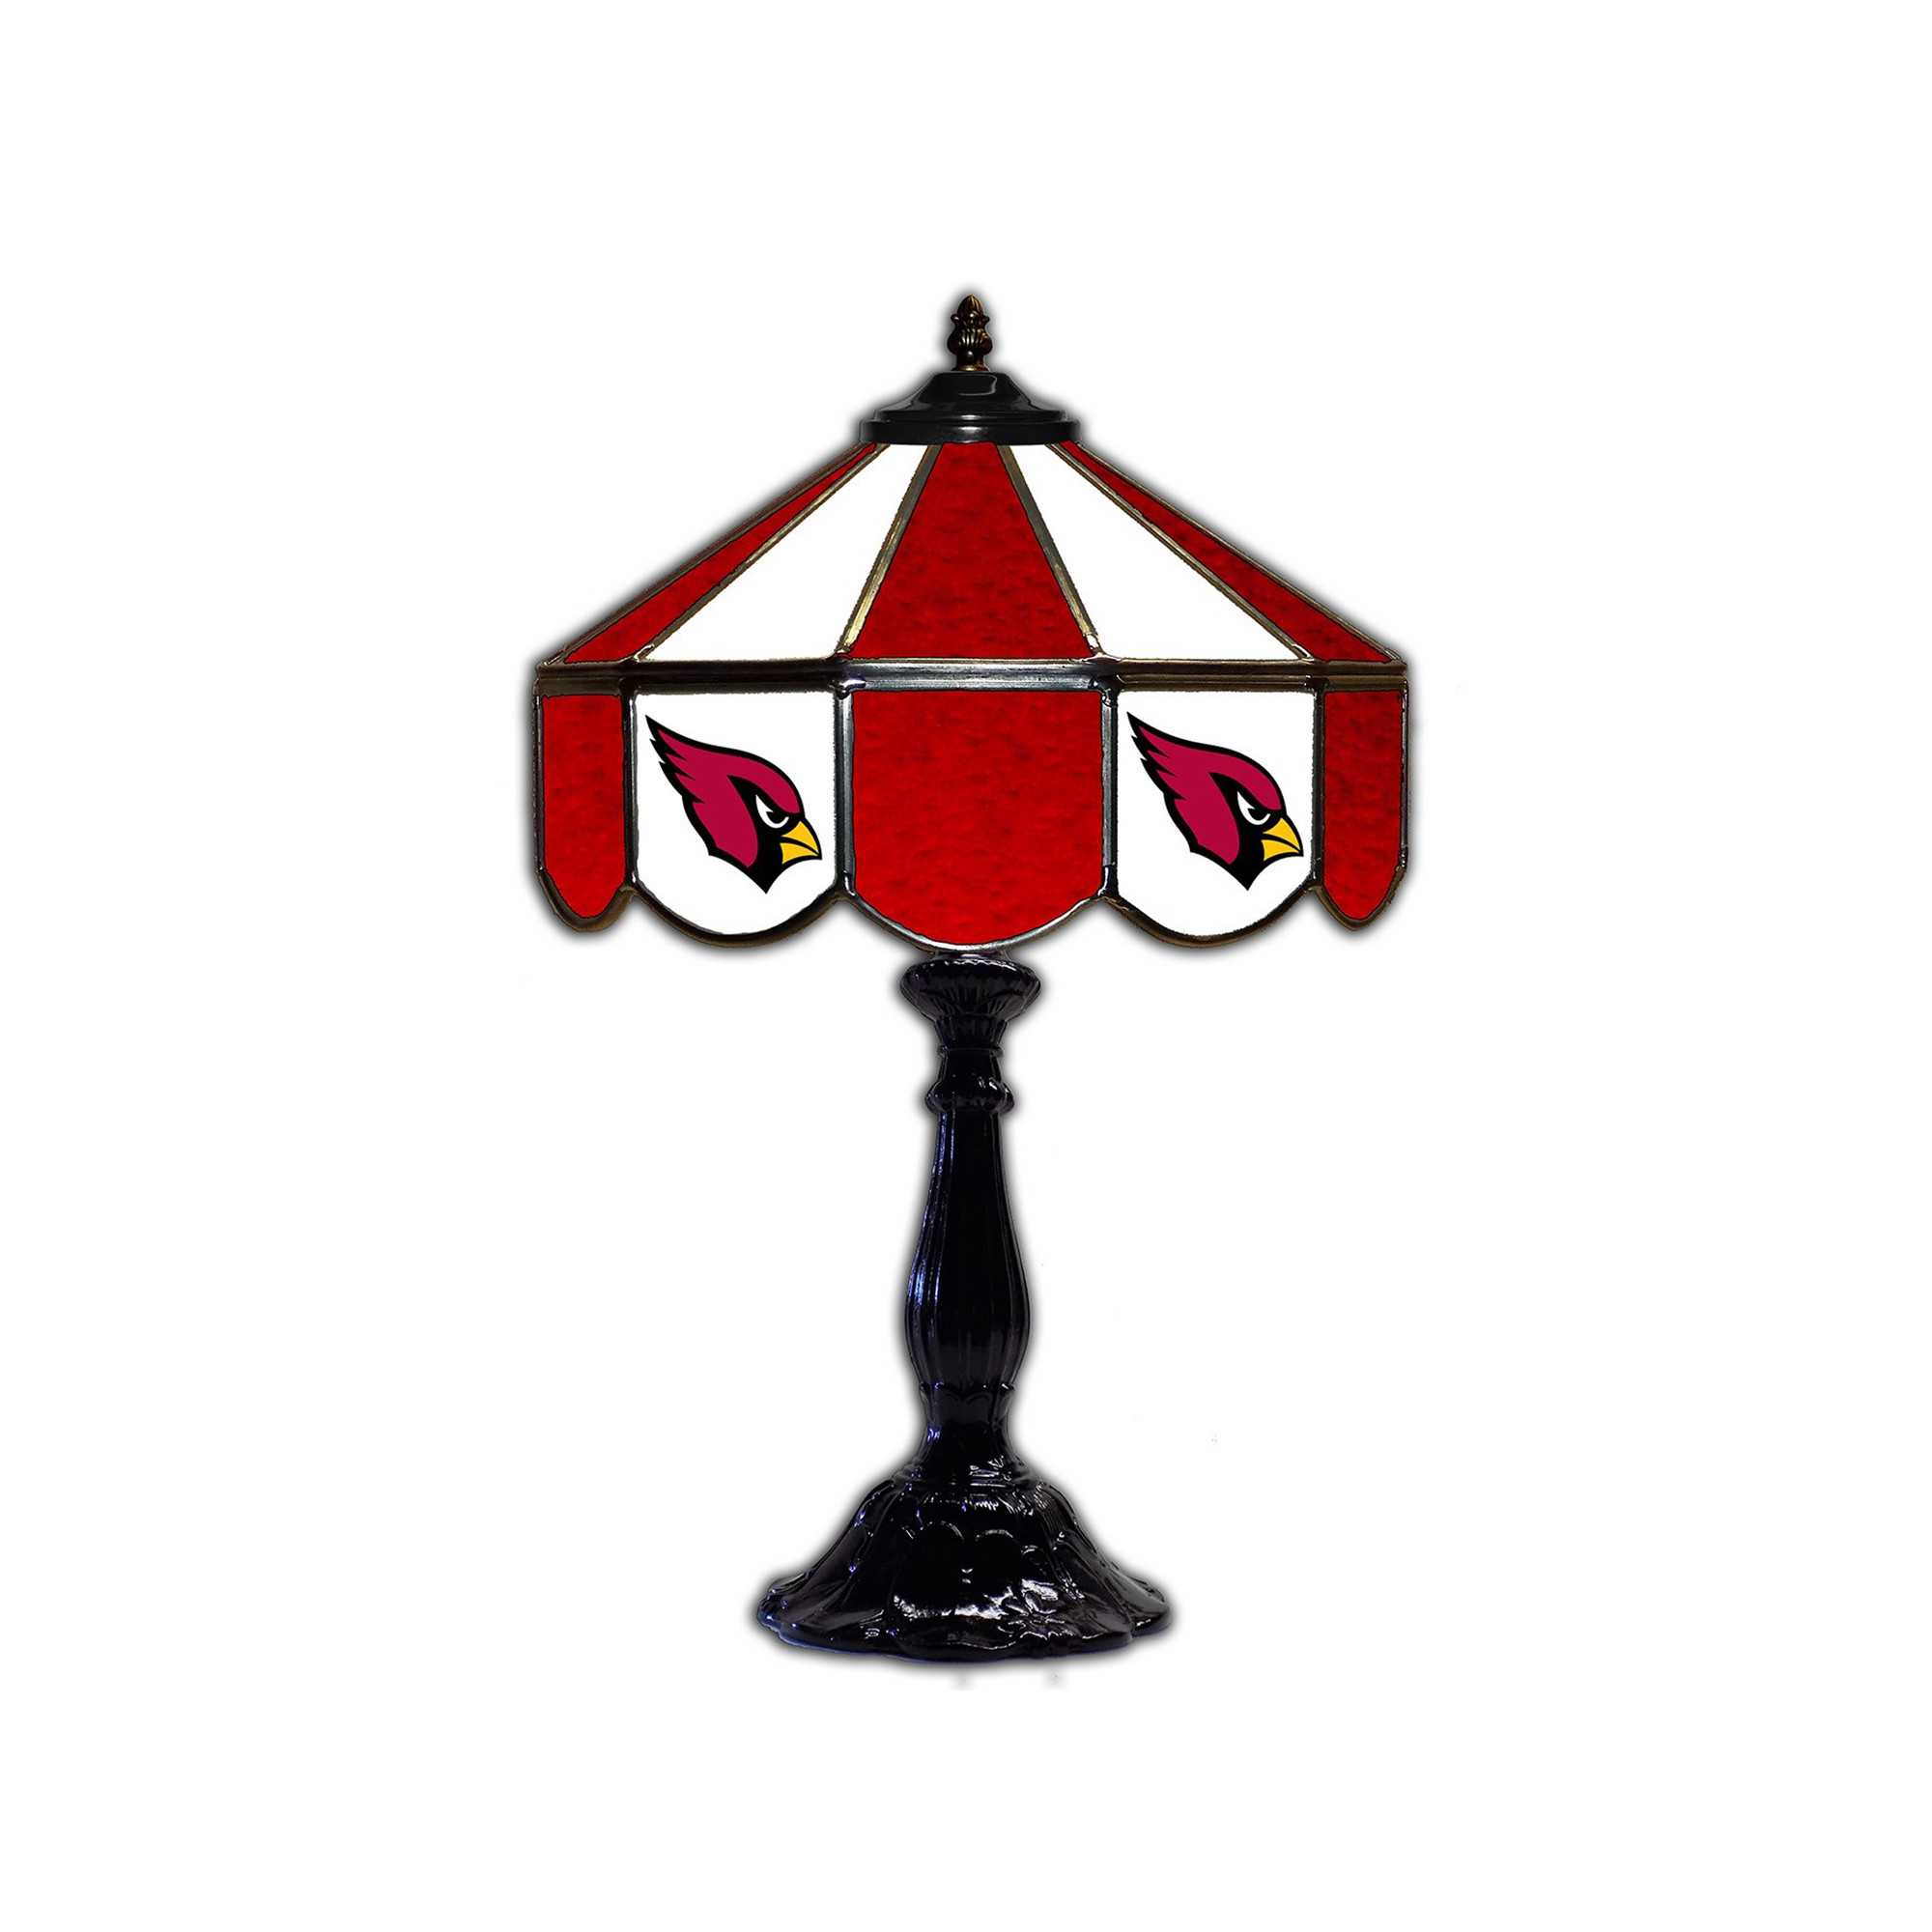 ARIZONA CARDINALS 21" GLASS TABLE LAMP